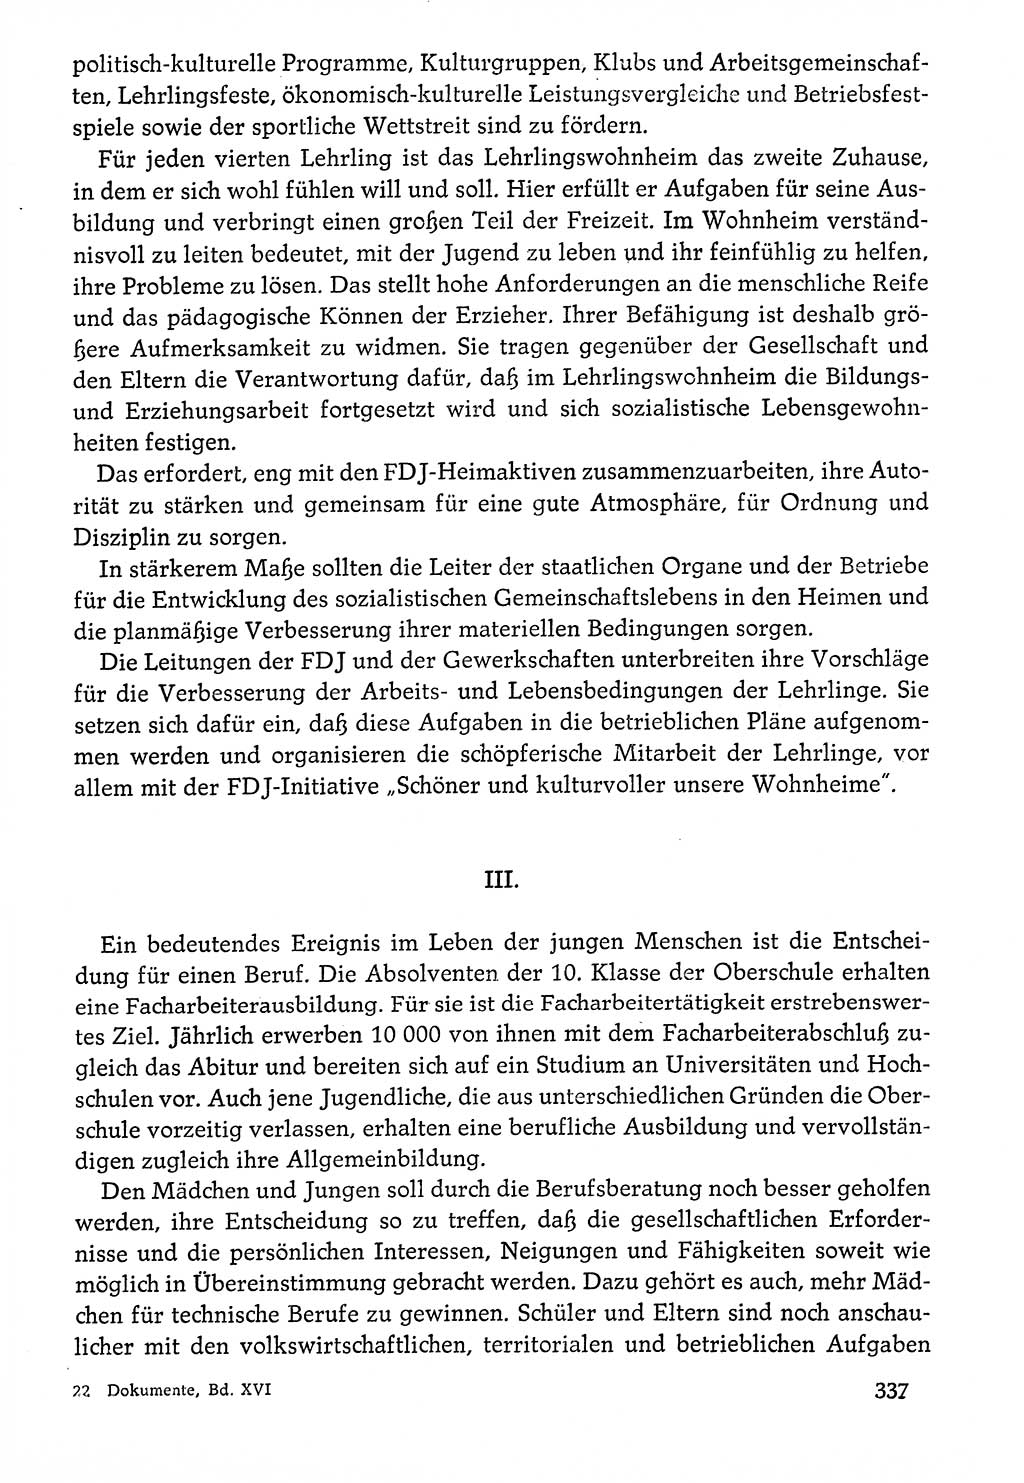 Dokumente der Sozialistischen Einheitspartei Deutschlands (SED) [Deutsche Demokratische Republik (DDR)] 1976-1977, Seite 337 (Dok. SED DDR 1976-1977, S. 337)